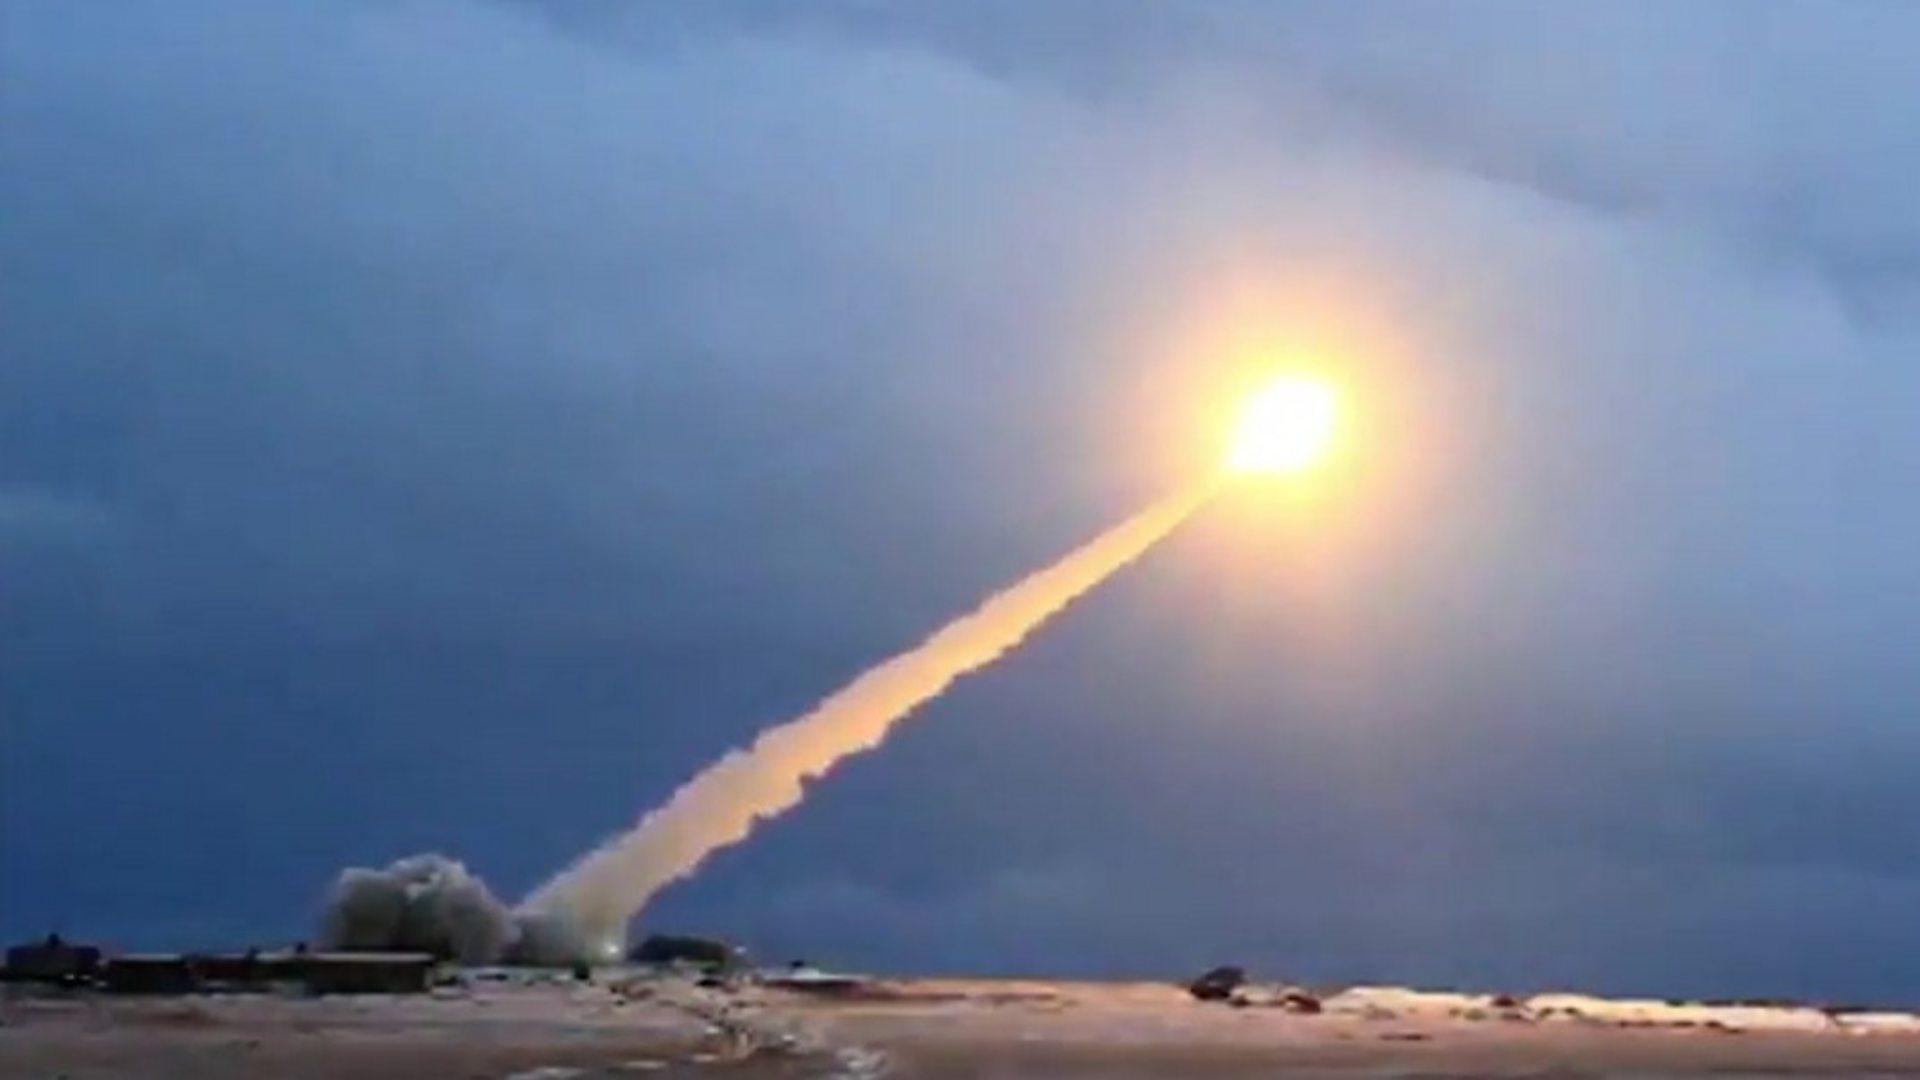 Ρωσικός πύραυλος Burevestnik: Βρετανός αξιωματούχος προειδοποιεί για τις ικανότητες του (βίντεο)